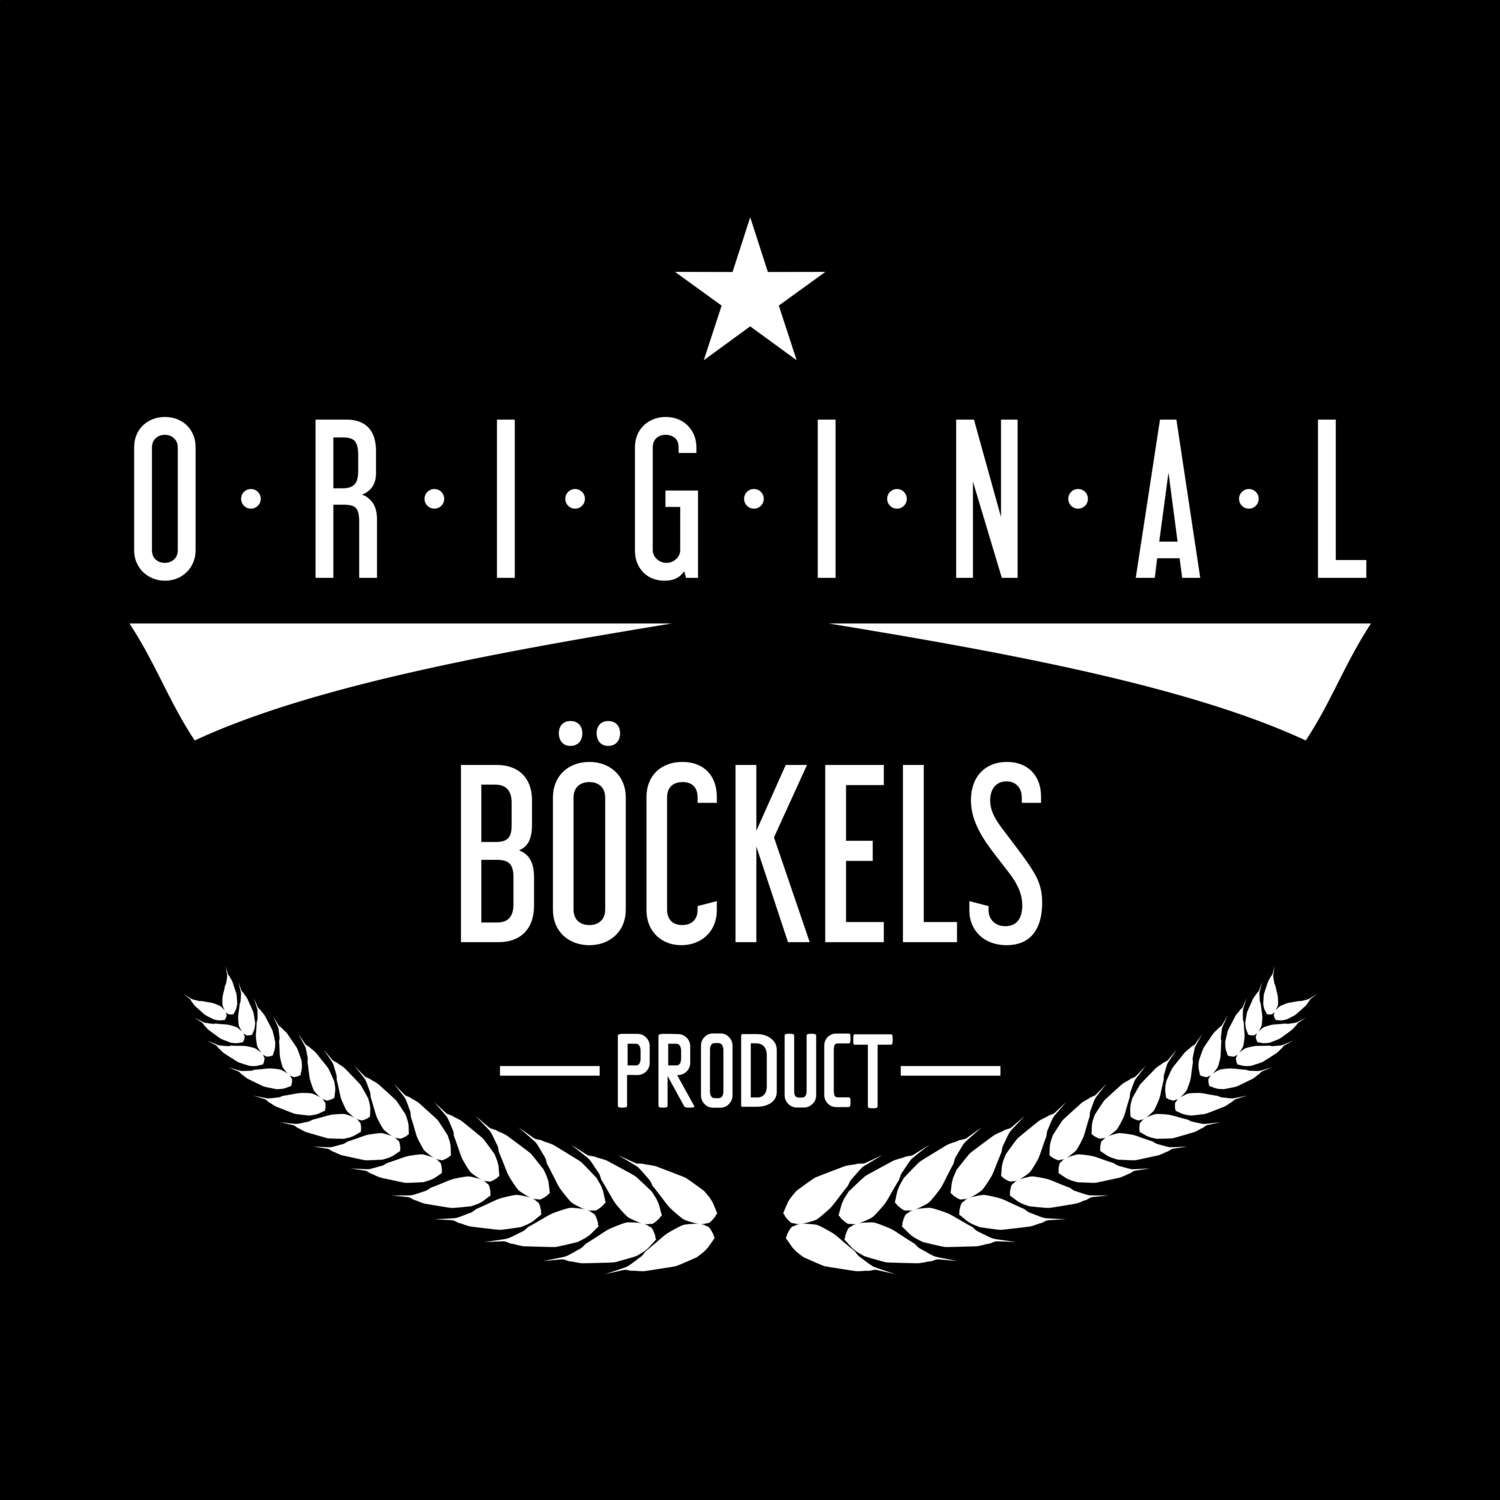 Böckels T-Shirt »Original Product«